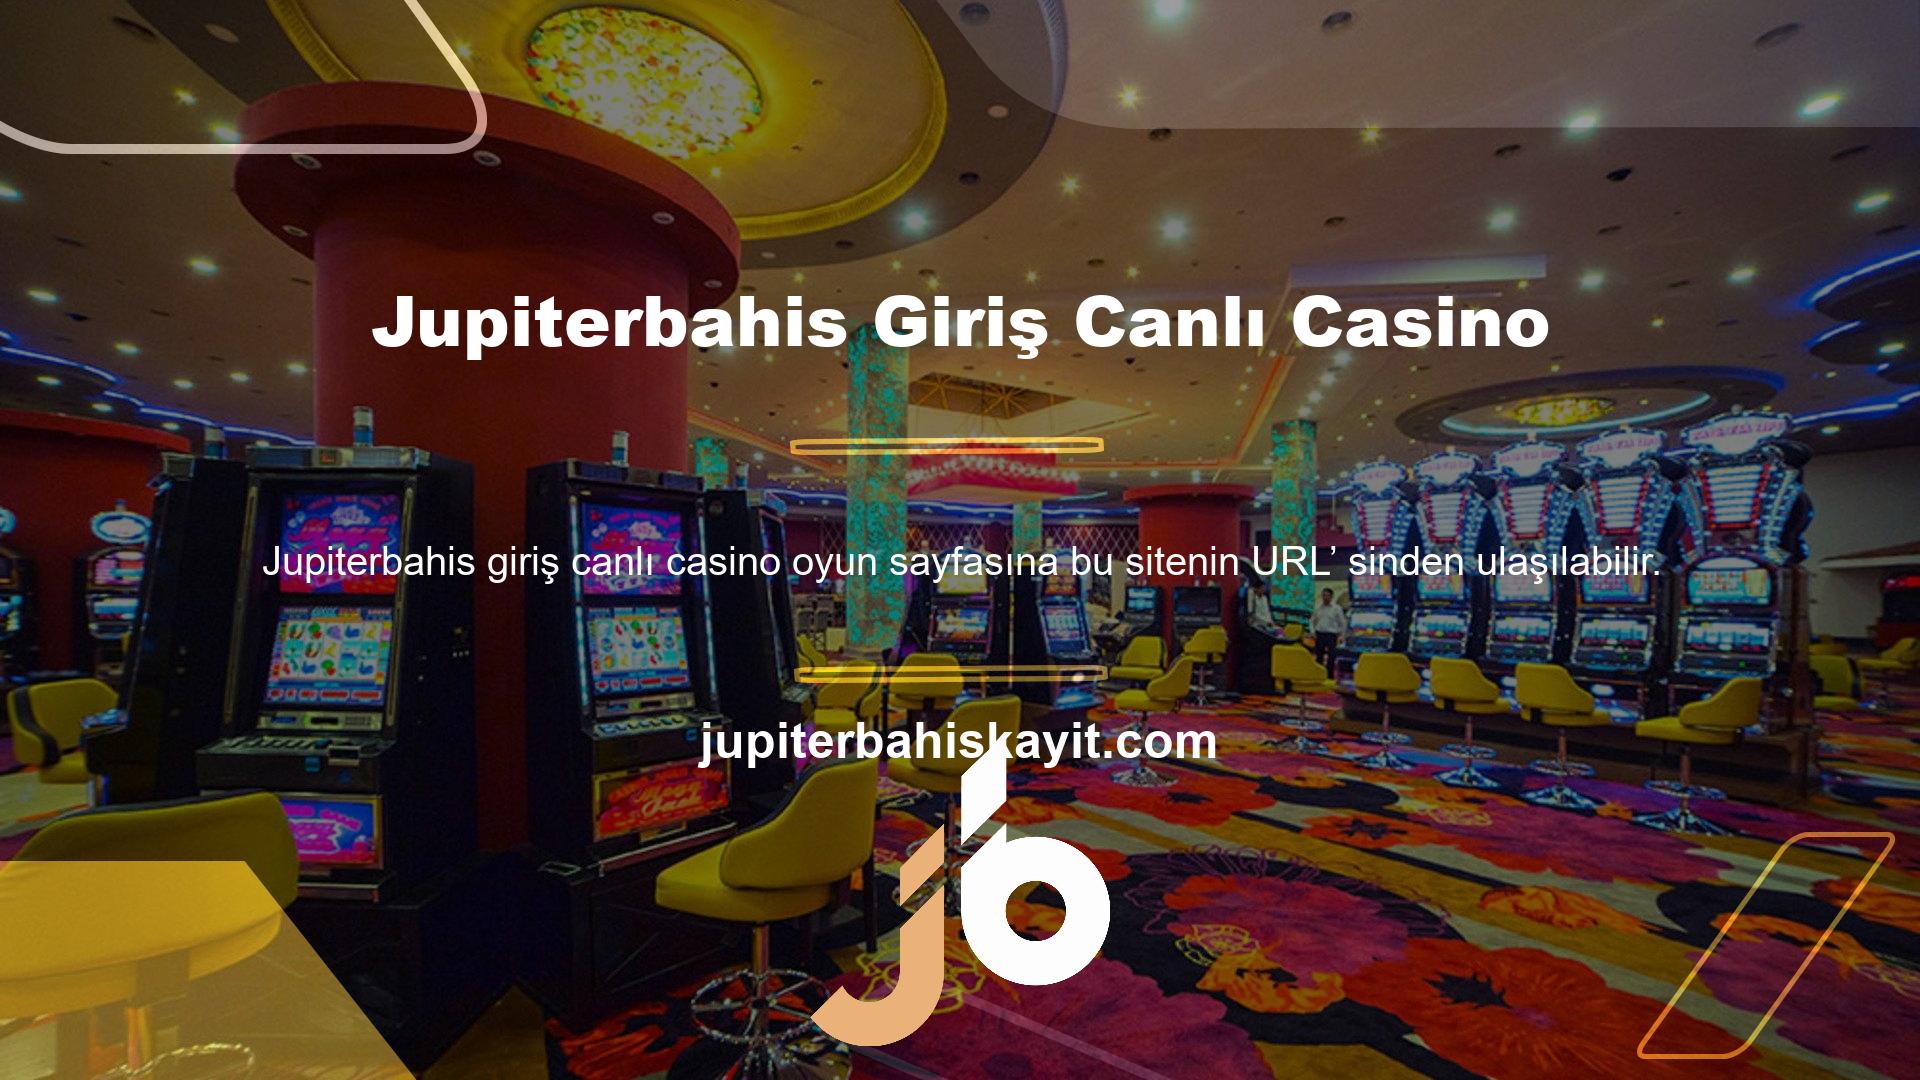 Bu sitenin URL’ sinden giriş yaptıktan sonra Jupiterbahis Canlı Casino giriş sayfasında yer alan giriş butonundan giriş yapabilirsiniz